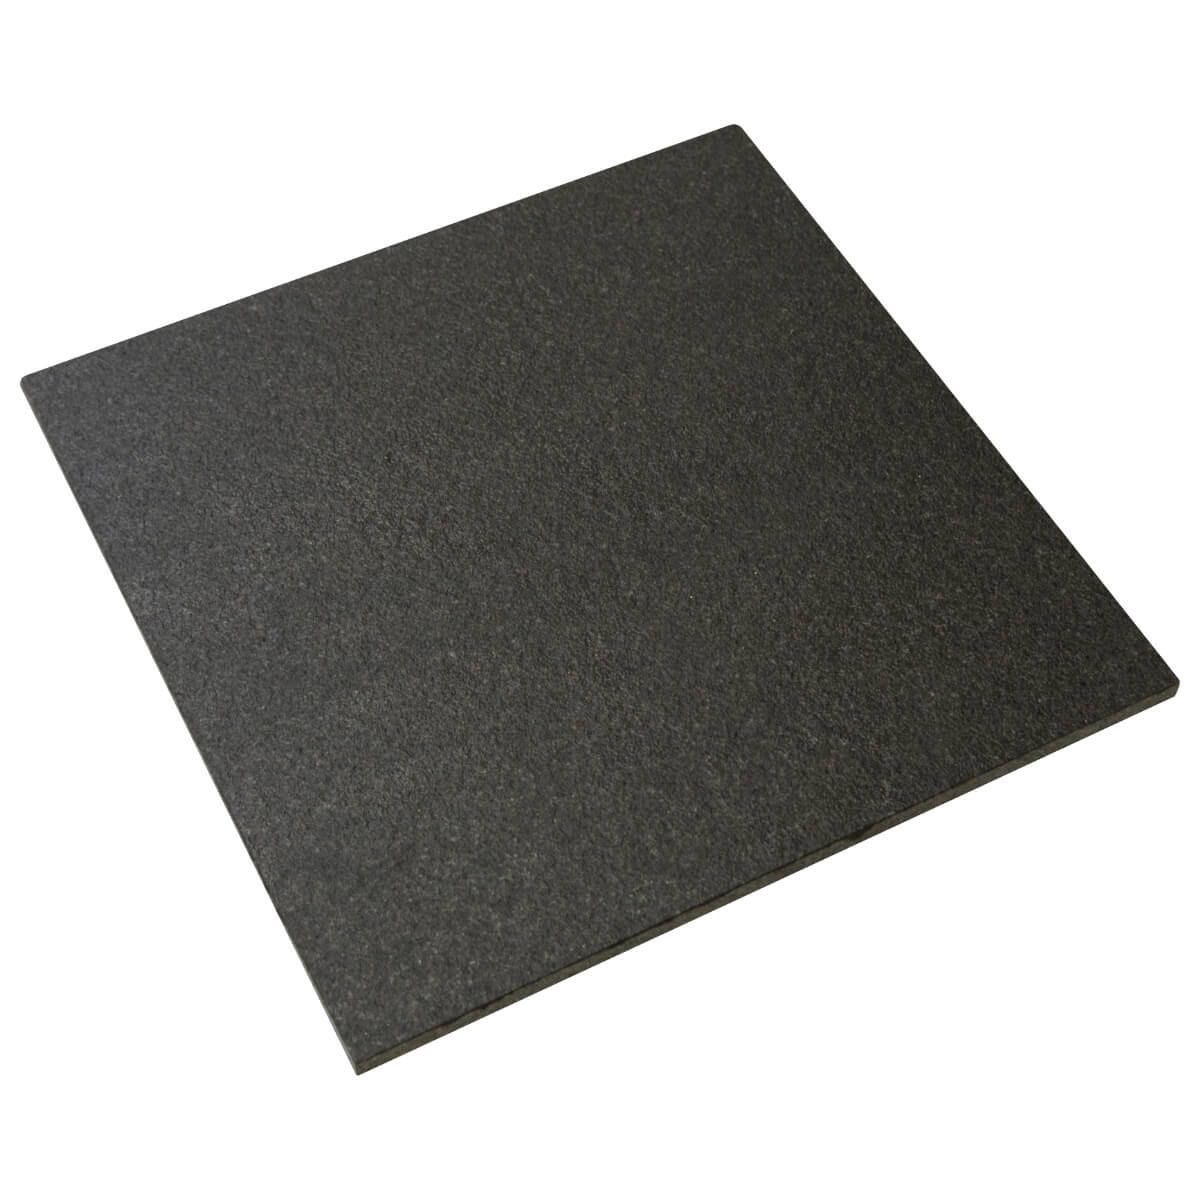 Płytki Granitowe Black Andesit płomieniowane 60x60x2 cm